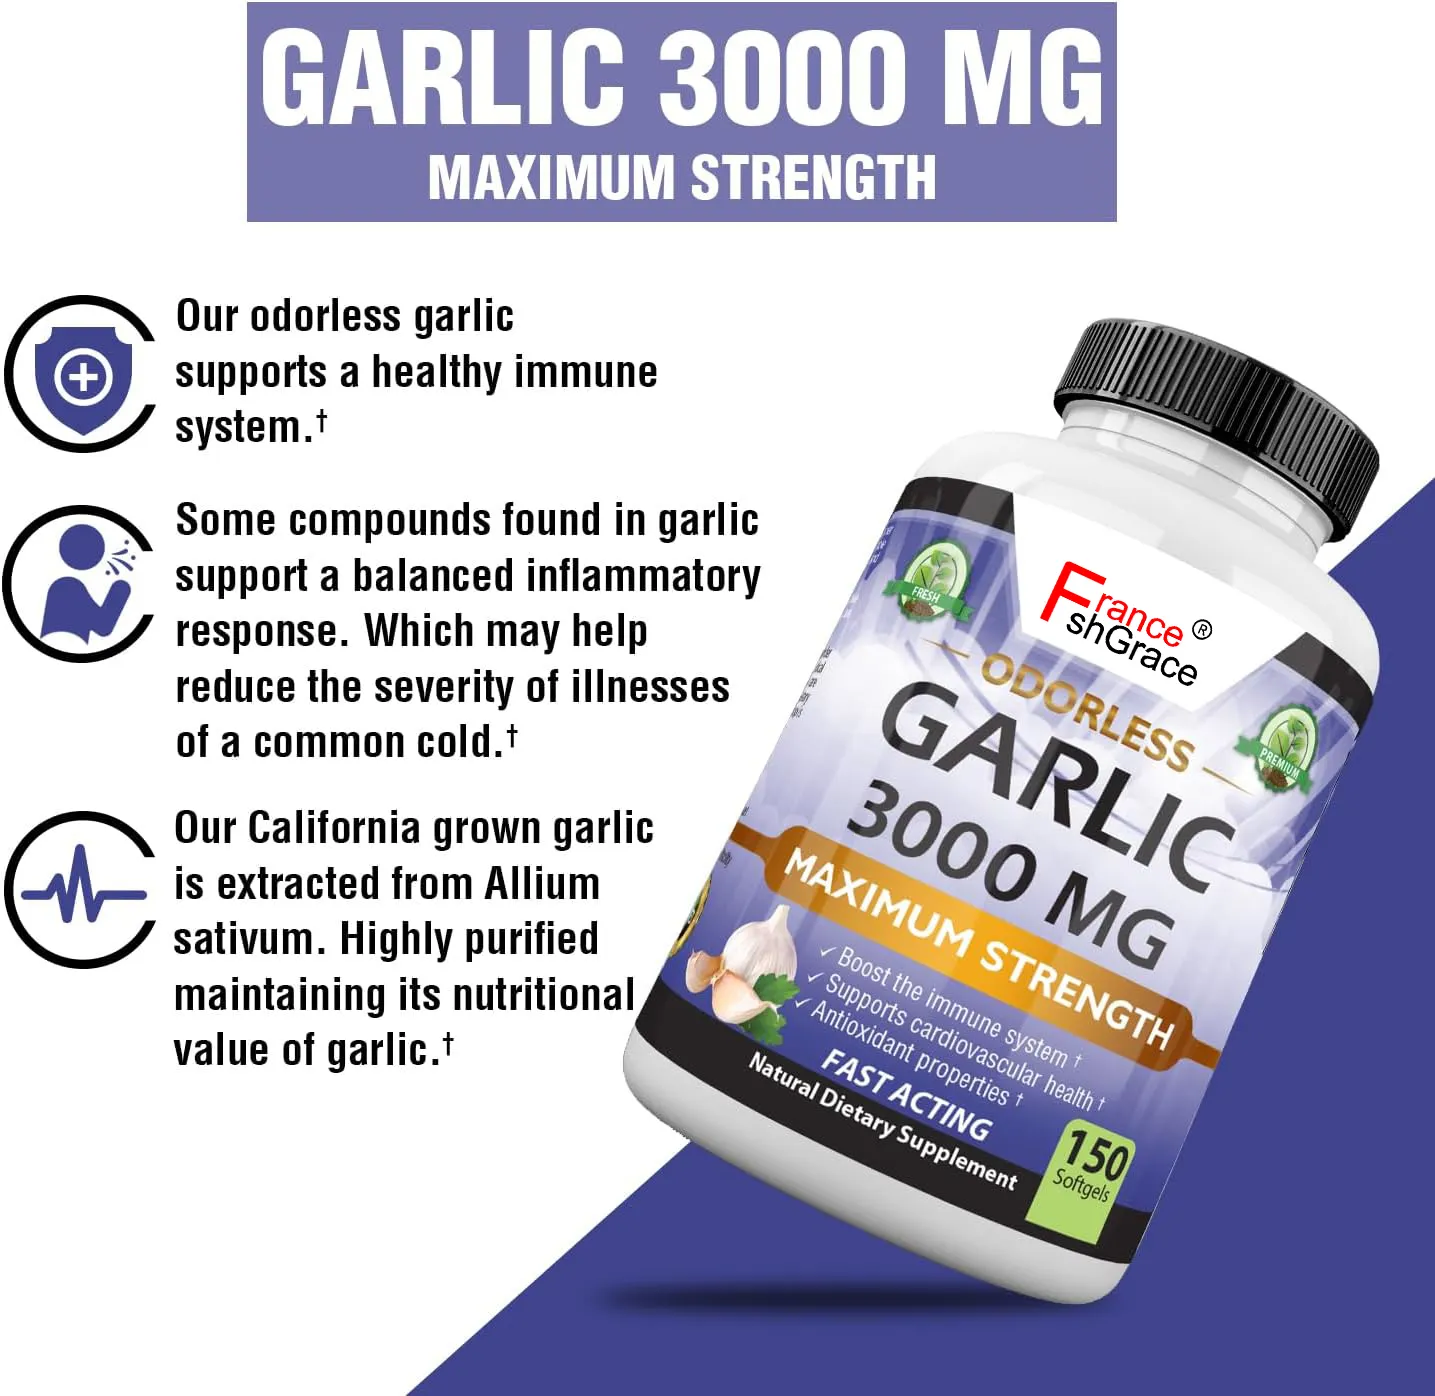 無臭の純粋なガーリックサプリメント3000 mg/サービング最大強度150ソフトジェルは健康的なコレステロールレベルを促進します